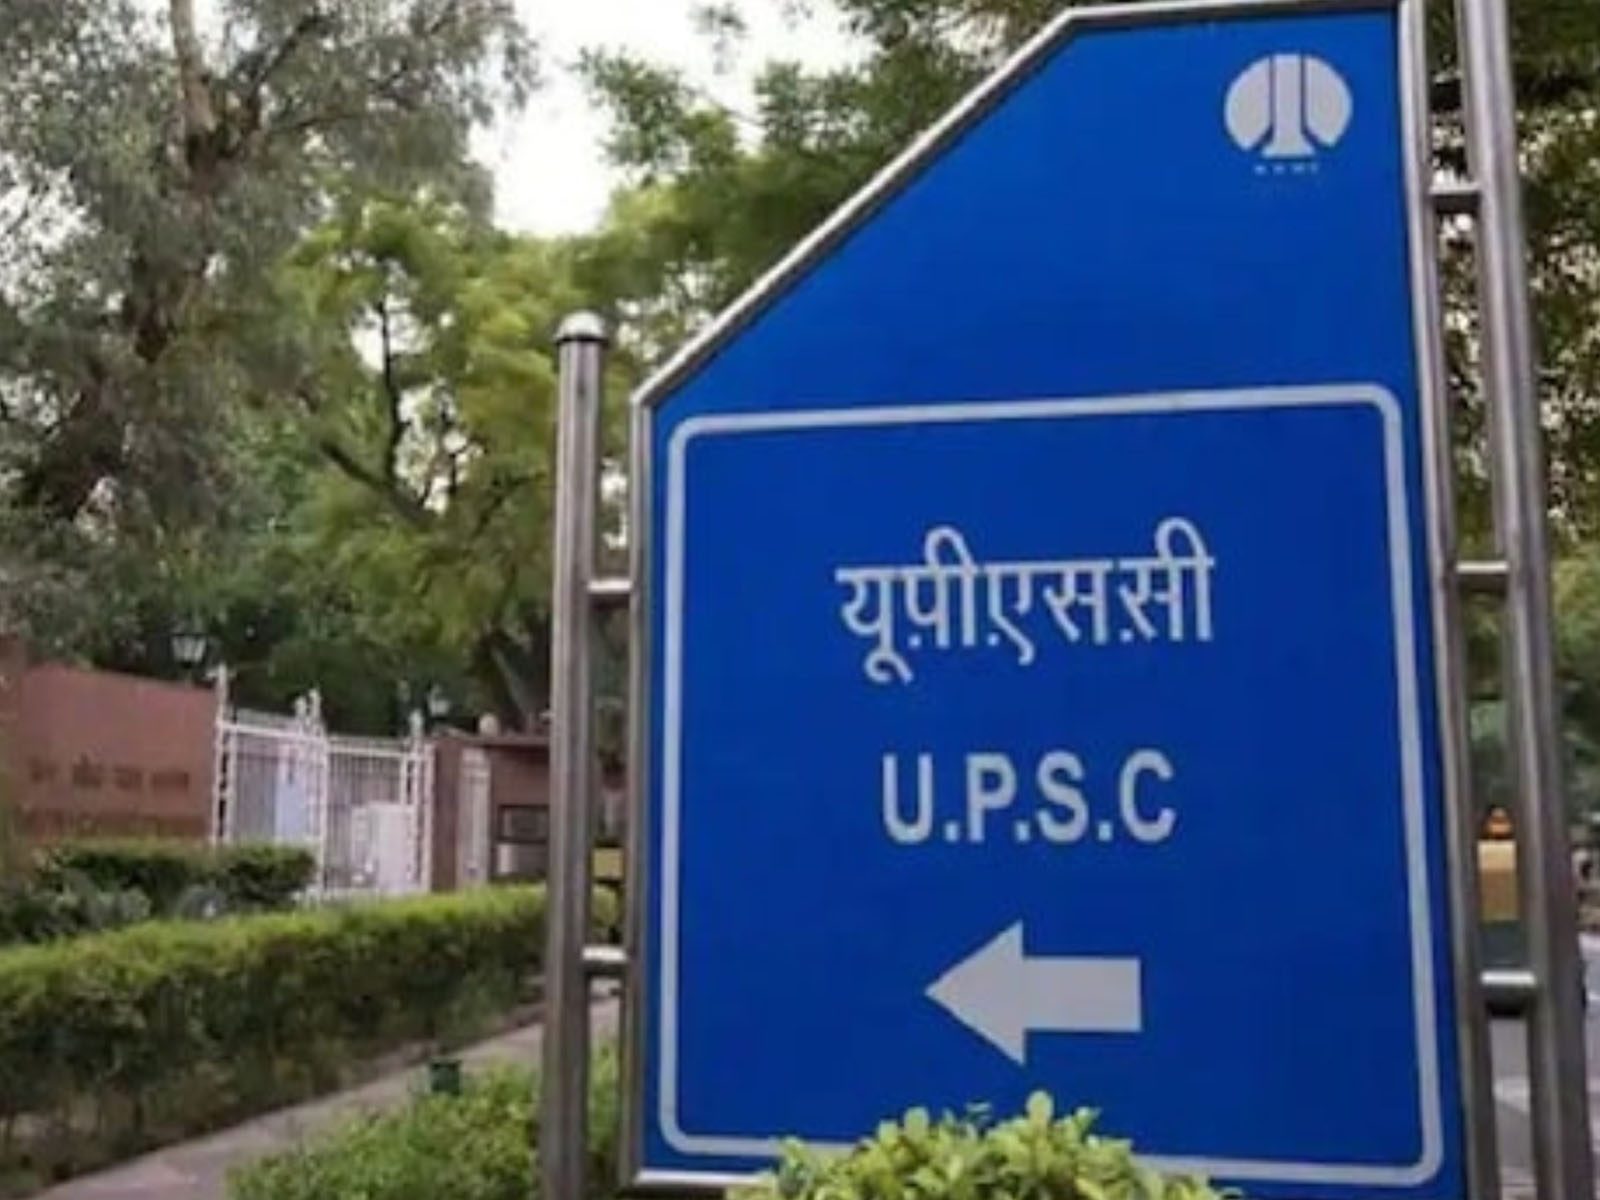 UPSC Recruitment 2022: UPSC ਦੀਆਂ ਅਲੱਗ-ਅਲੱਗ ਅਸਾਮੀਆਂ 'ਤੇ ਨਿਕਲੀ ਭਰਤੀ, ਜਾਣੋ ਕਿੰਝ ਕਰਨਾ ਹੈ ਅਪਲਾਈ